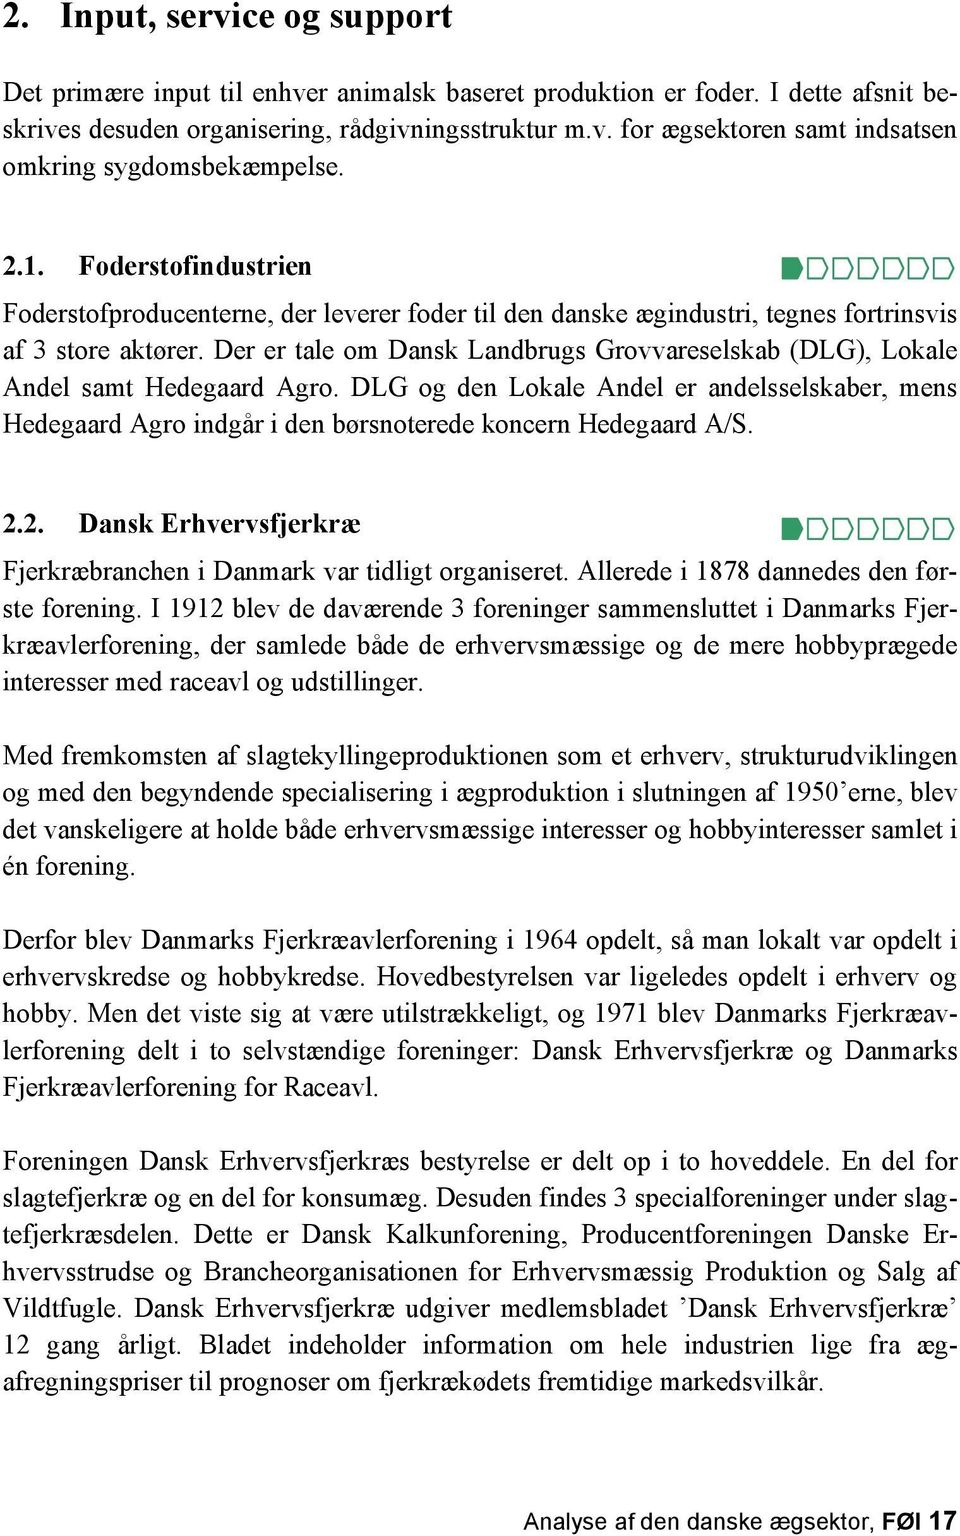 Der er tale om Dansk Landbrugs Grovvareselskab (DLG), Lokale Andel samt Hedegaard Agro. DLG og den Lokale Andel er andelsselskaber, mens Hedegaard Agro indgår i den børsnoterede koncern Hedegaard A/S.